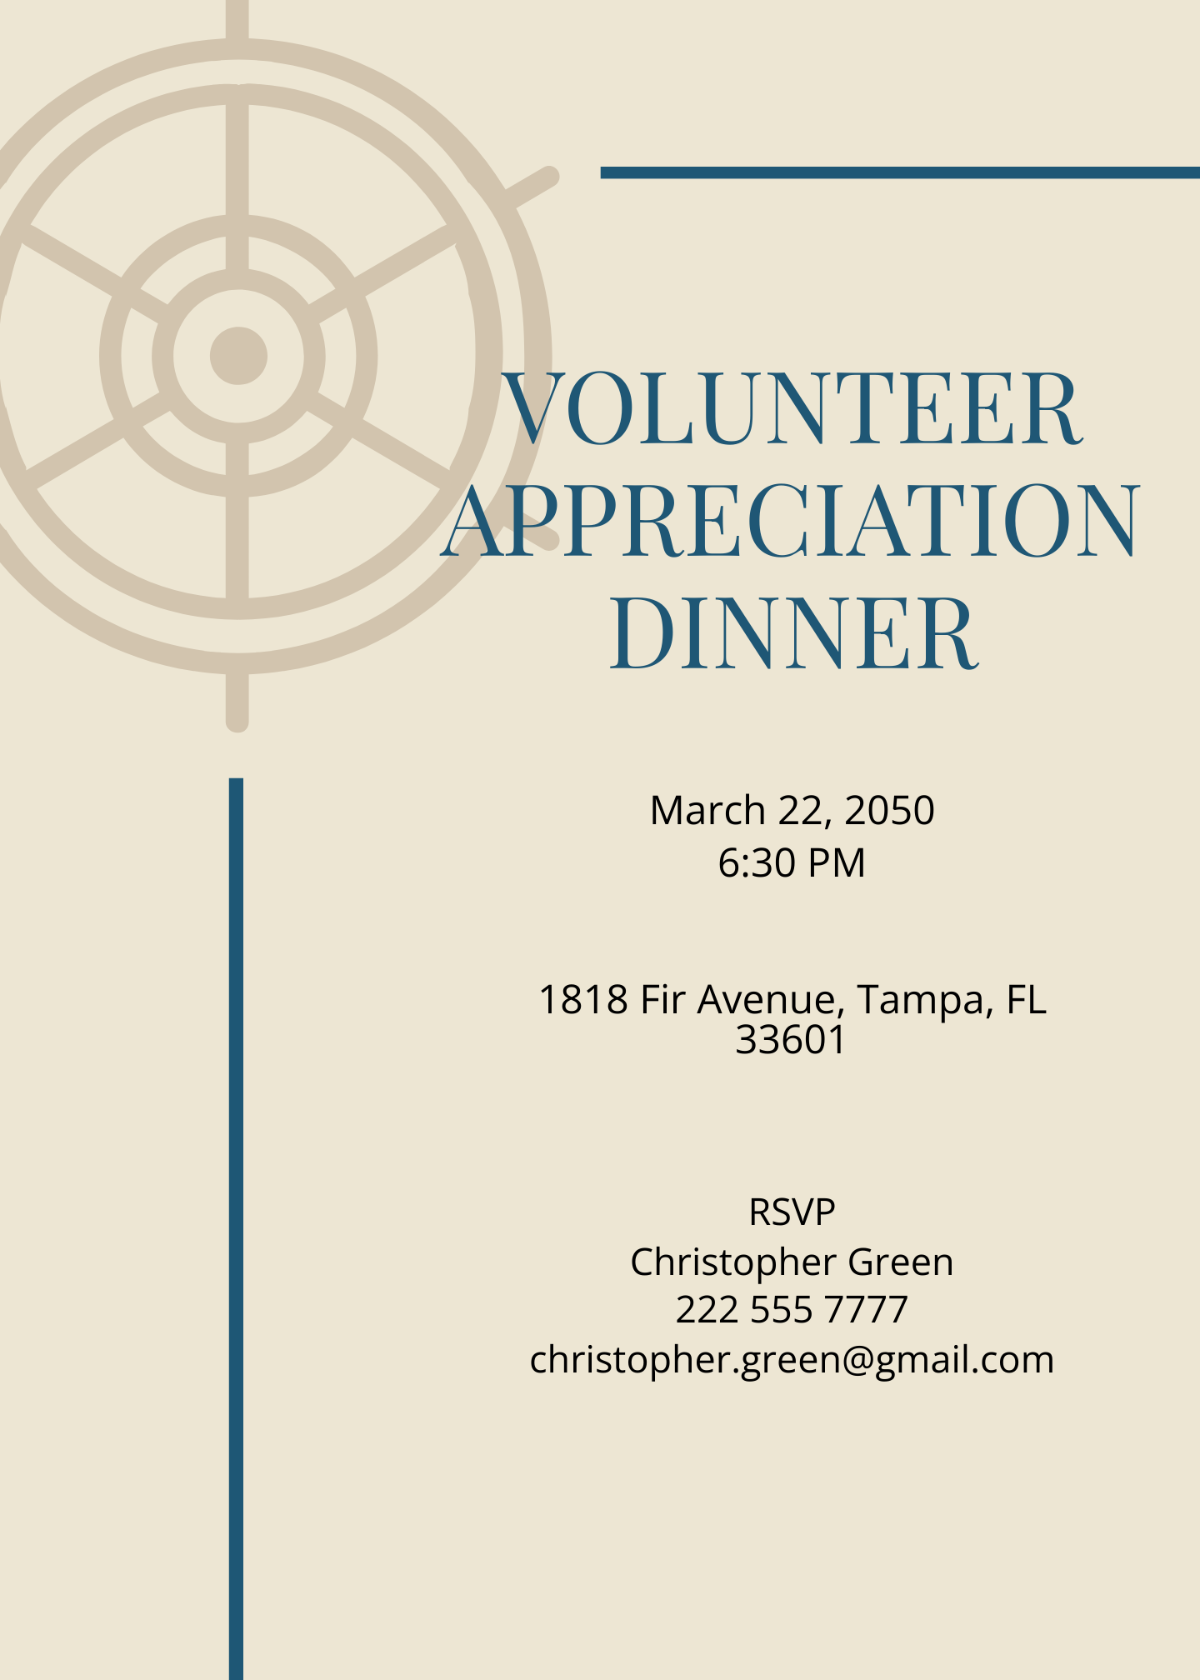 Volunteer Appreciation Dinner Invitation